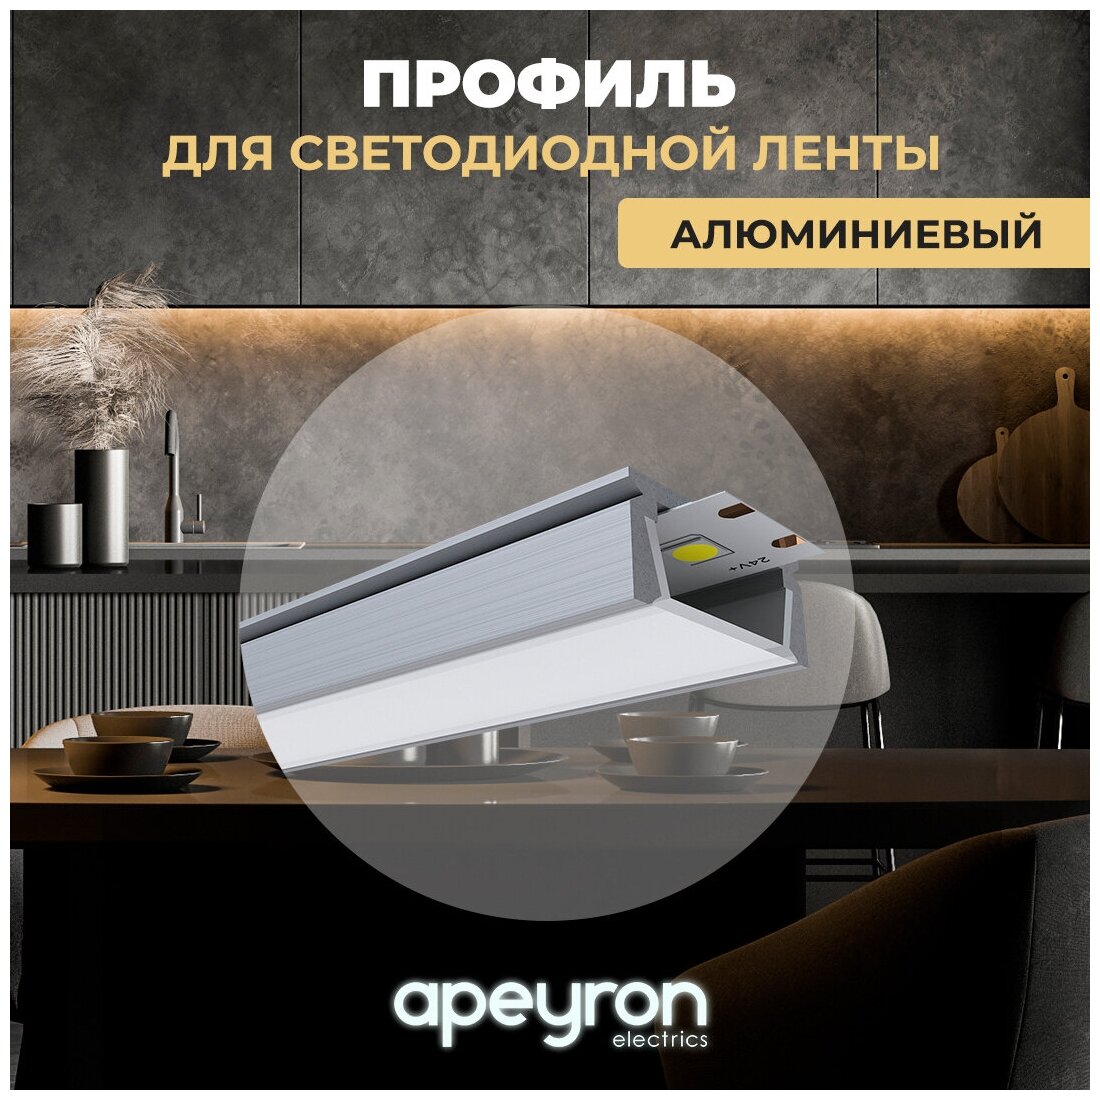 Профиль для светодиодной ленты Apeyron 08-05 прямой накладной, анодированный алюминий, 1м.